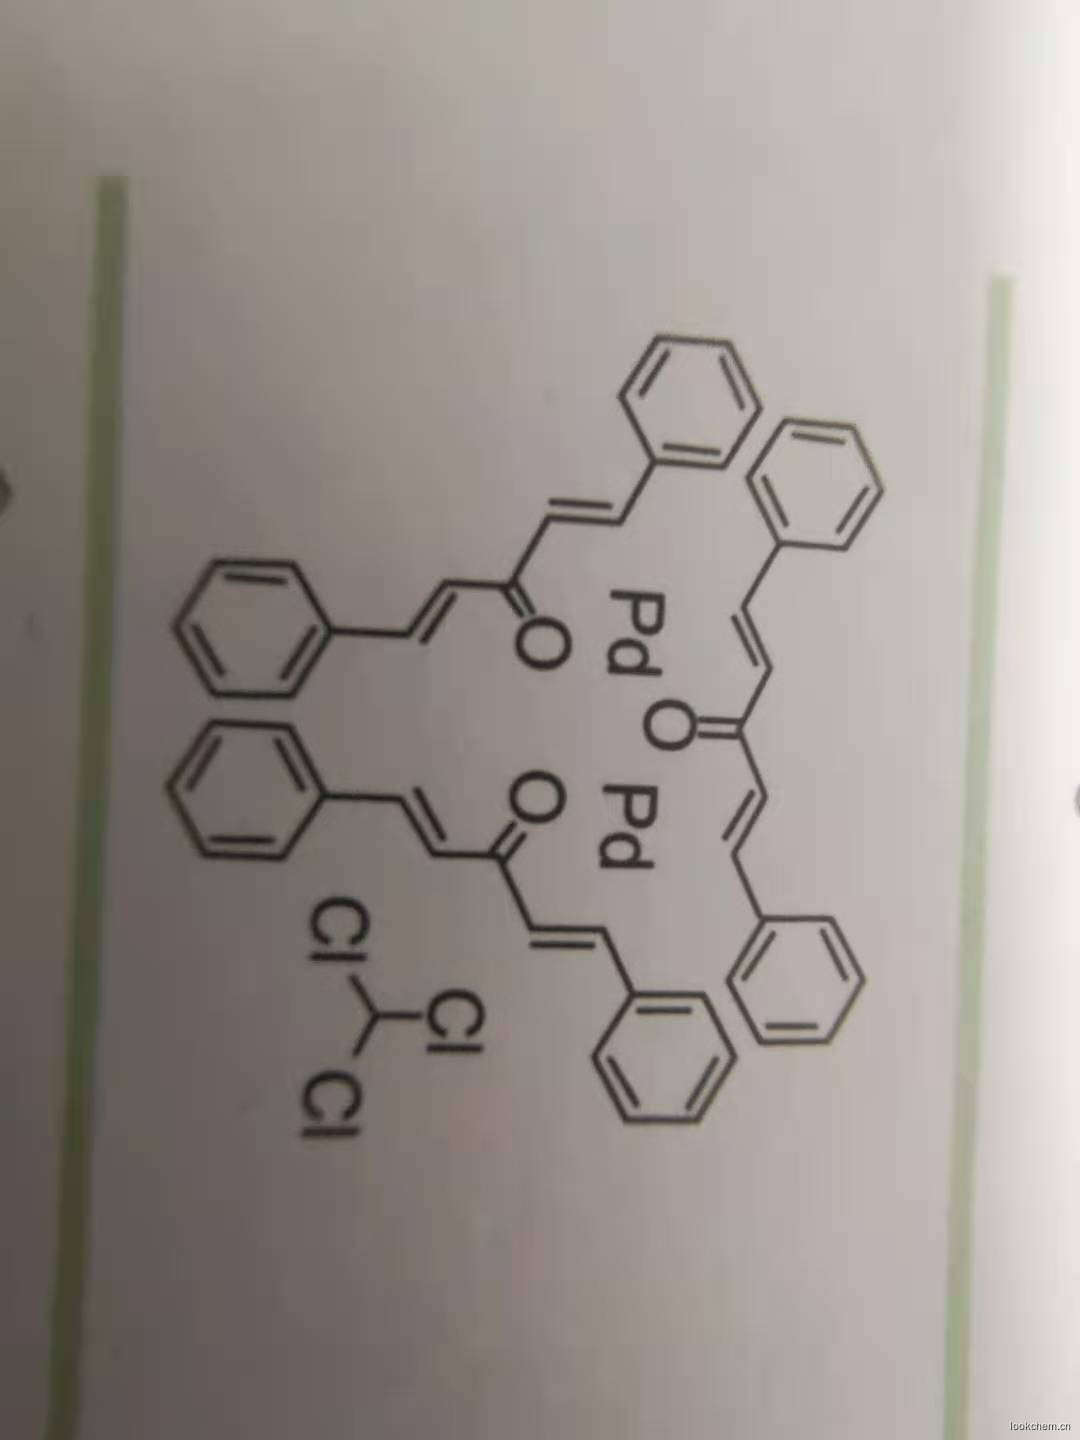 三(二亚苄基丙酮)二钯-氯仿加合物